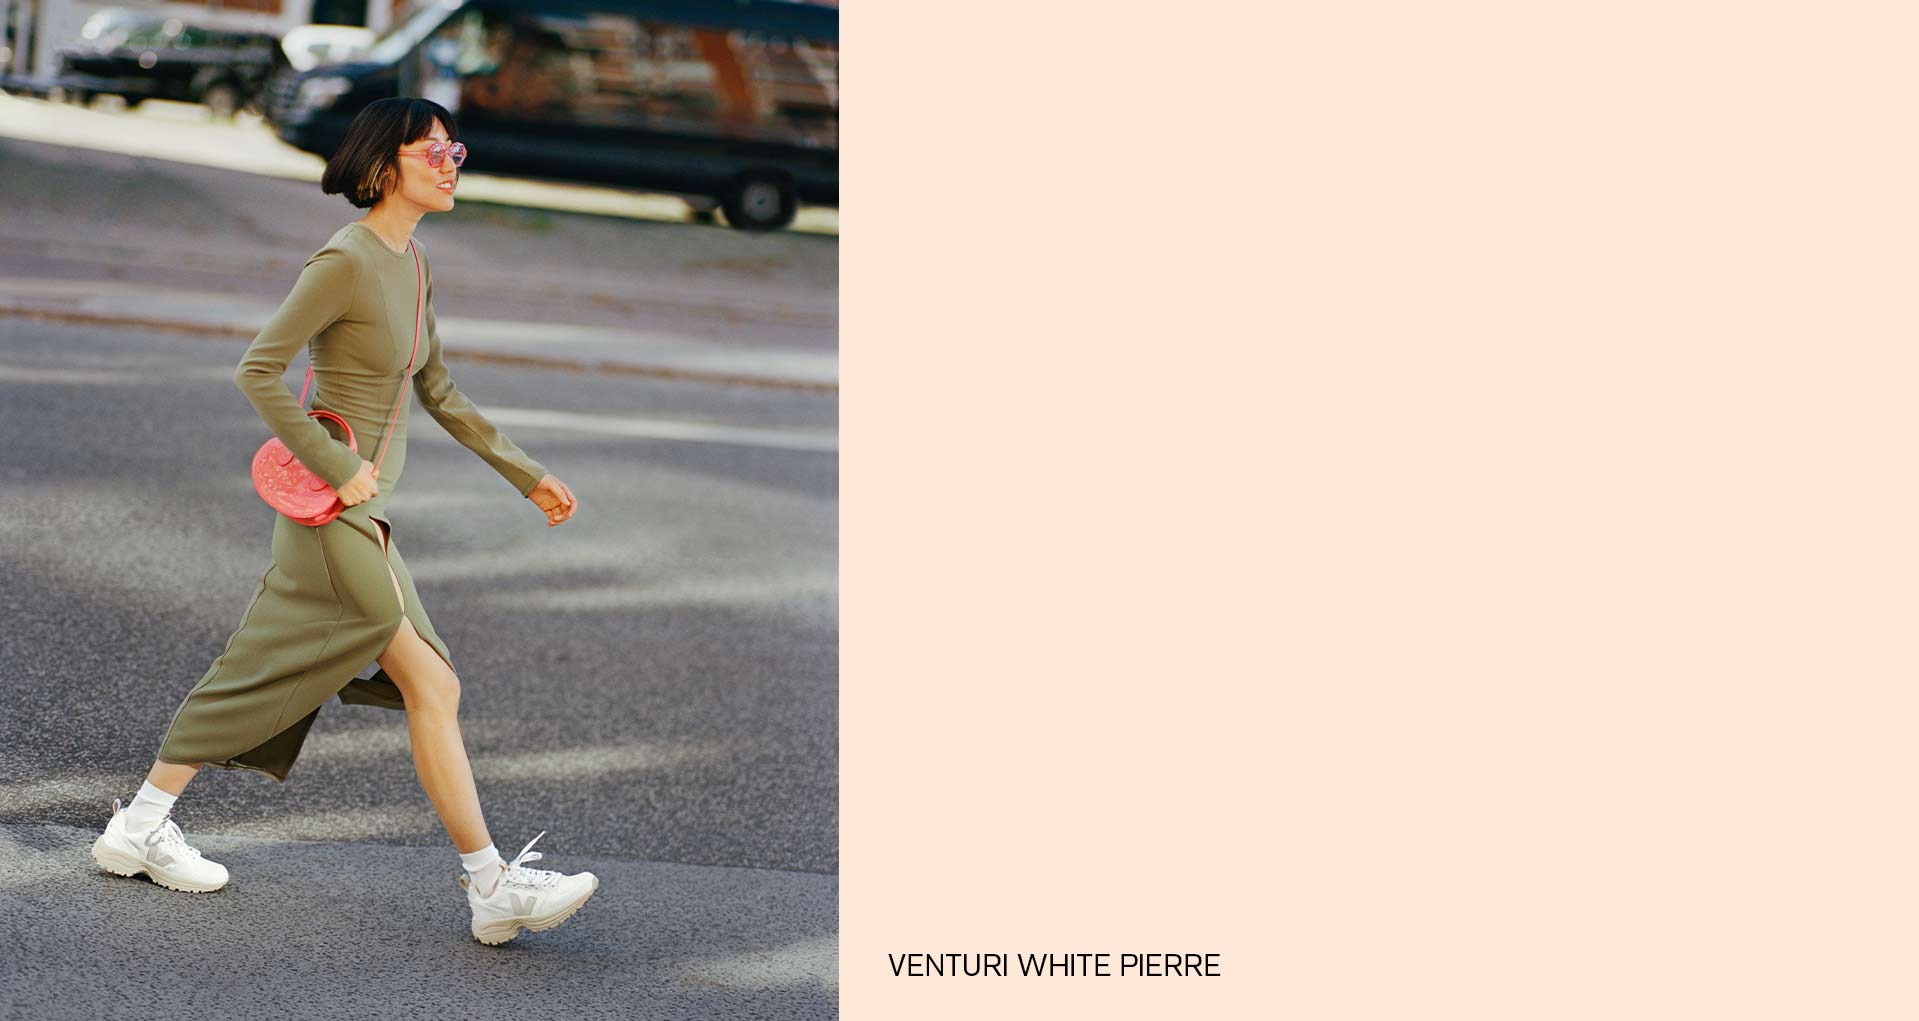 femme marchant avec des basket VEJA venturi white pierre au pied